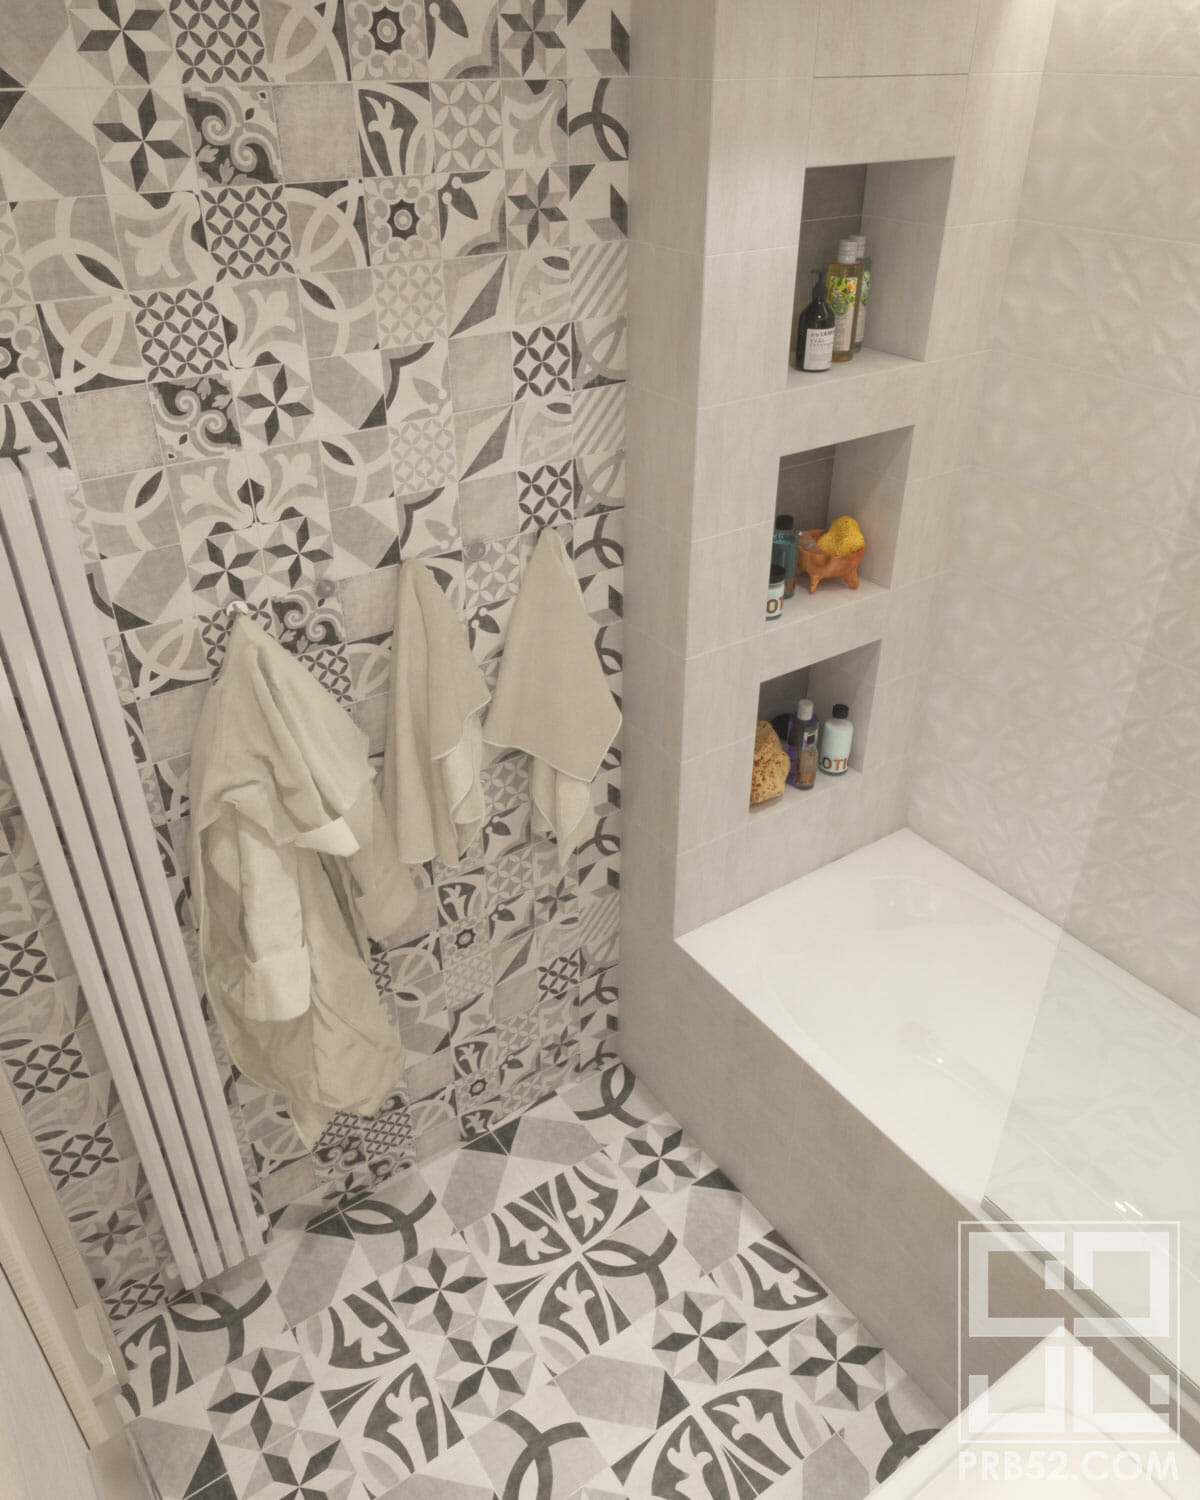 дизайн интерьера ванной комнаты